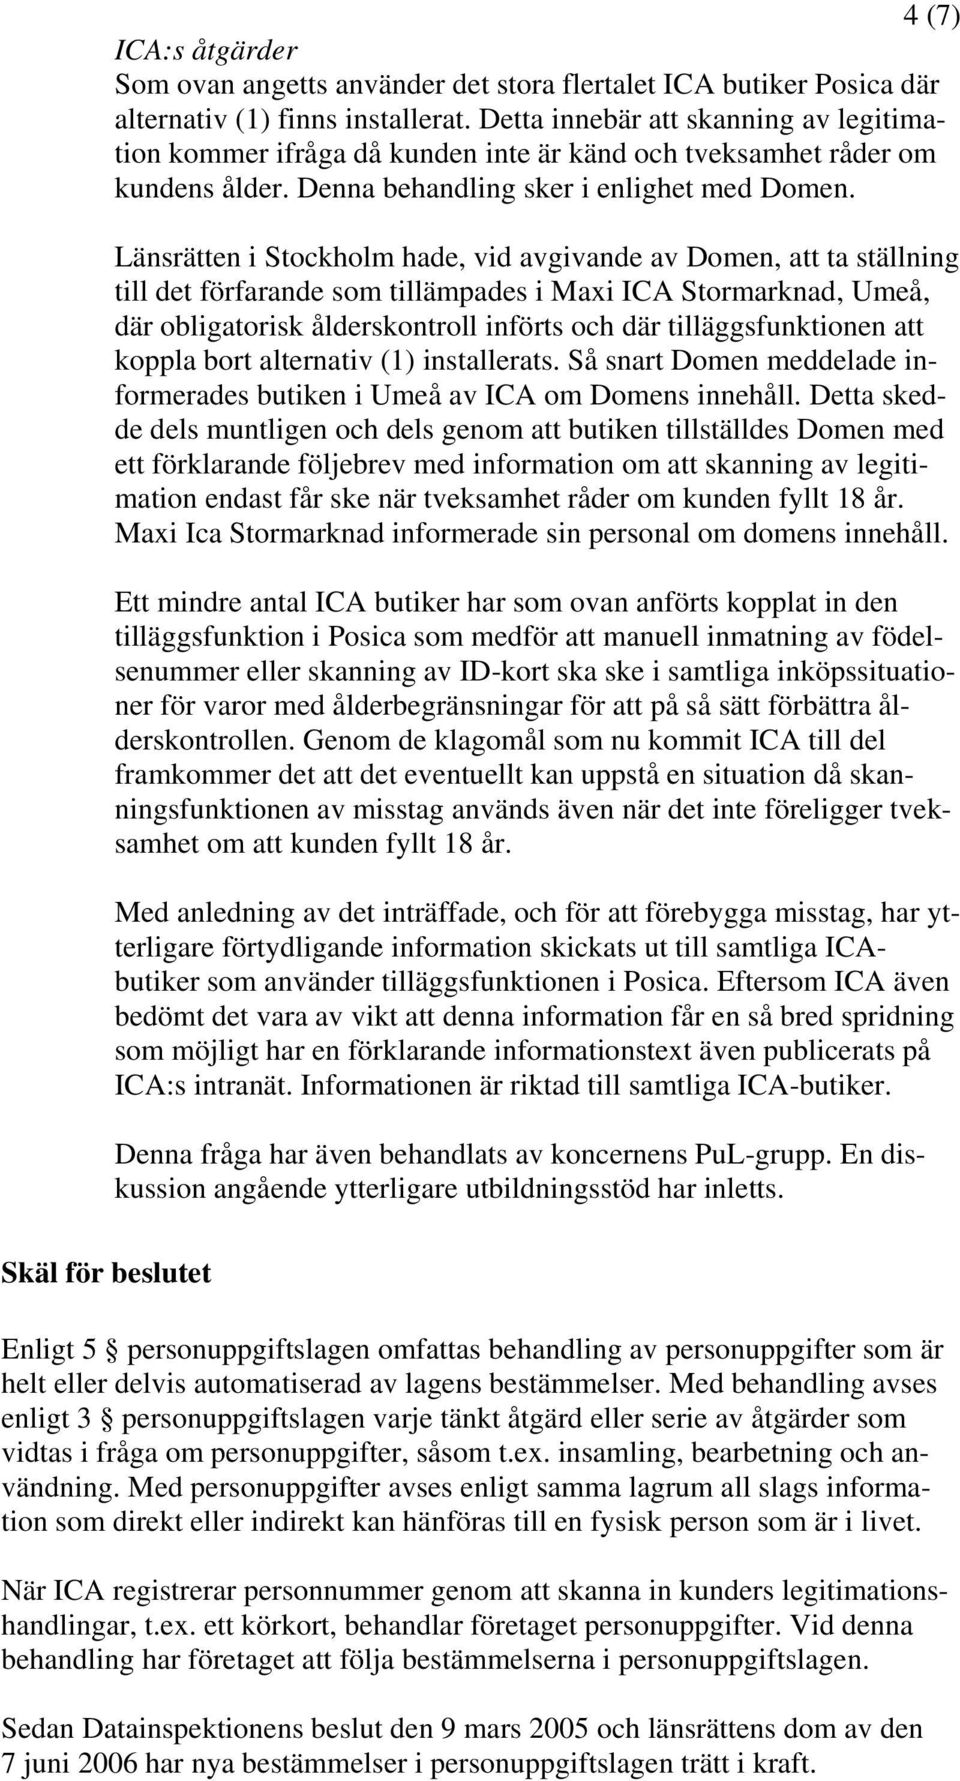 Länsrätten i Stockholm hade, vid avgivande av Domen, att ta ställning till det förfarande som tillämpades i Maxi ICA Stormarknad, Umeå, där obligatorisk ålderskontroll införts och där